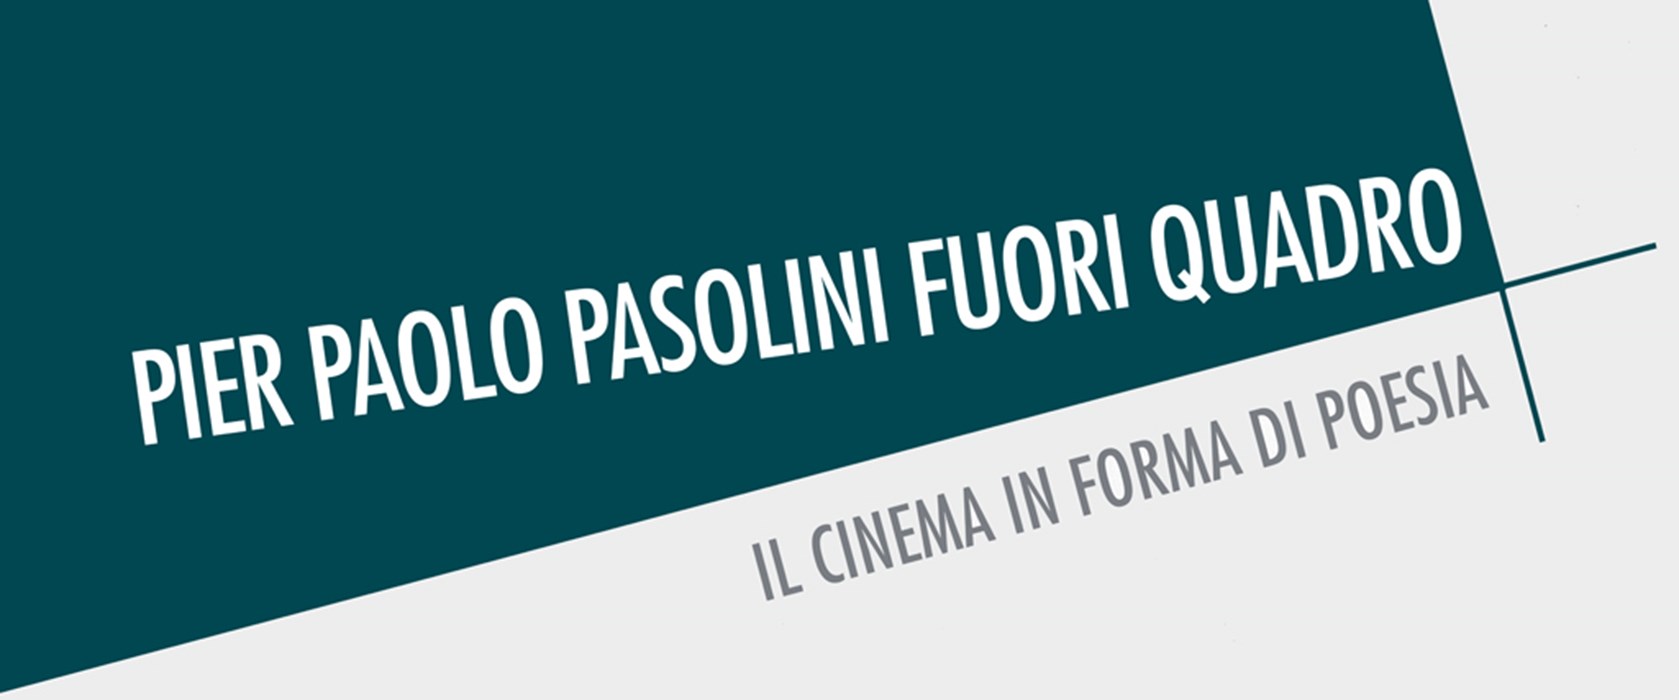 Eventi Pier Paolo Pasolini Fuori Quadro banner first